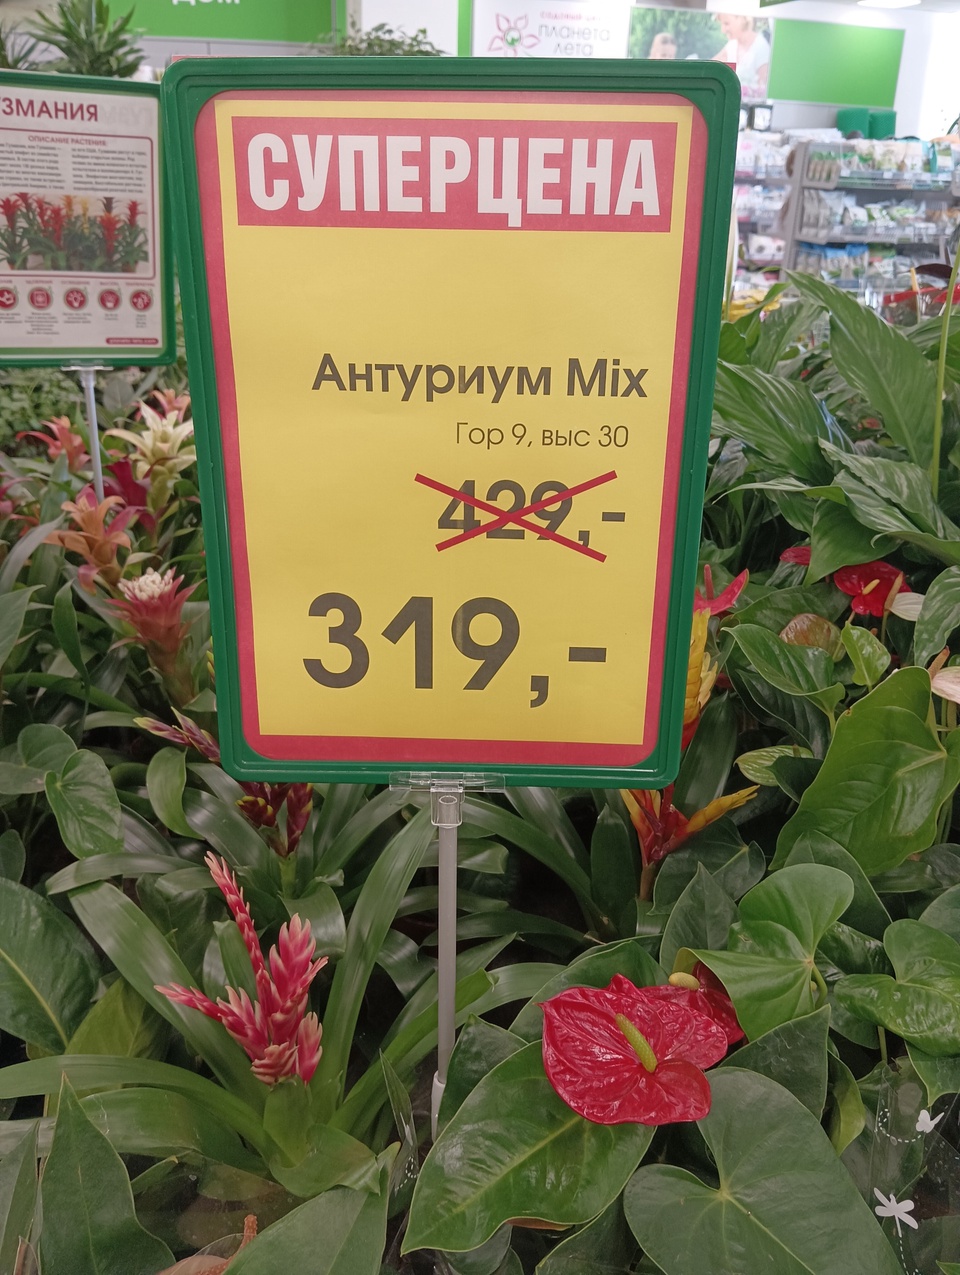 Антуриум mix — Садовый центр Планета Лета, Пятигорск